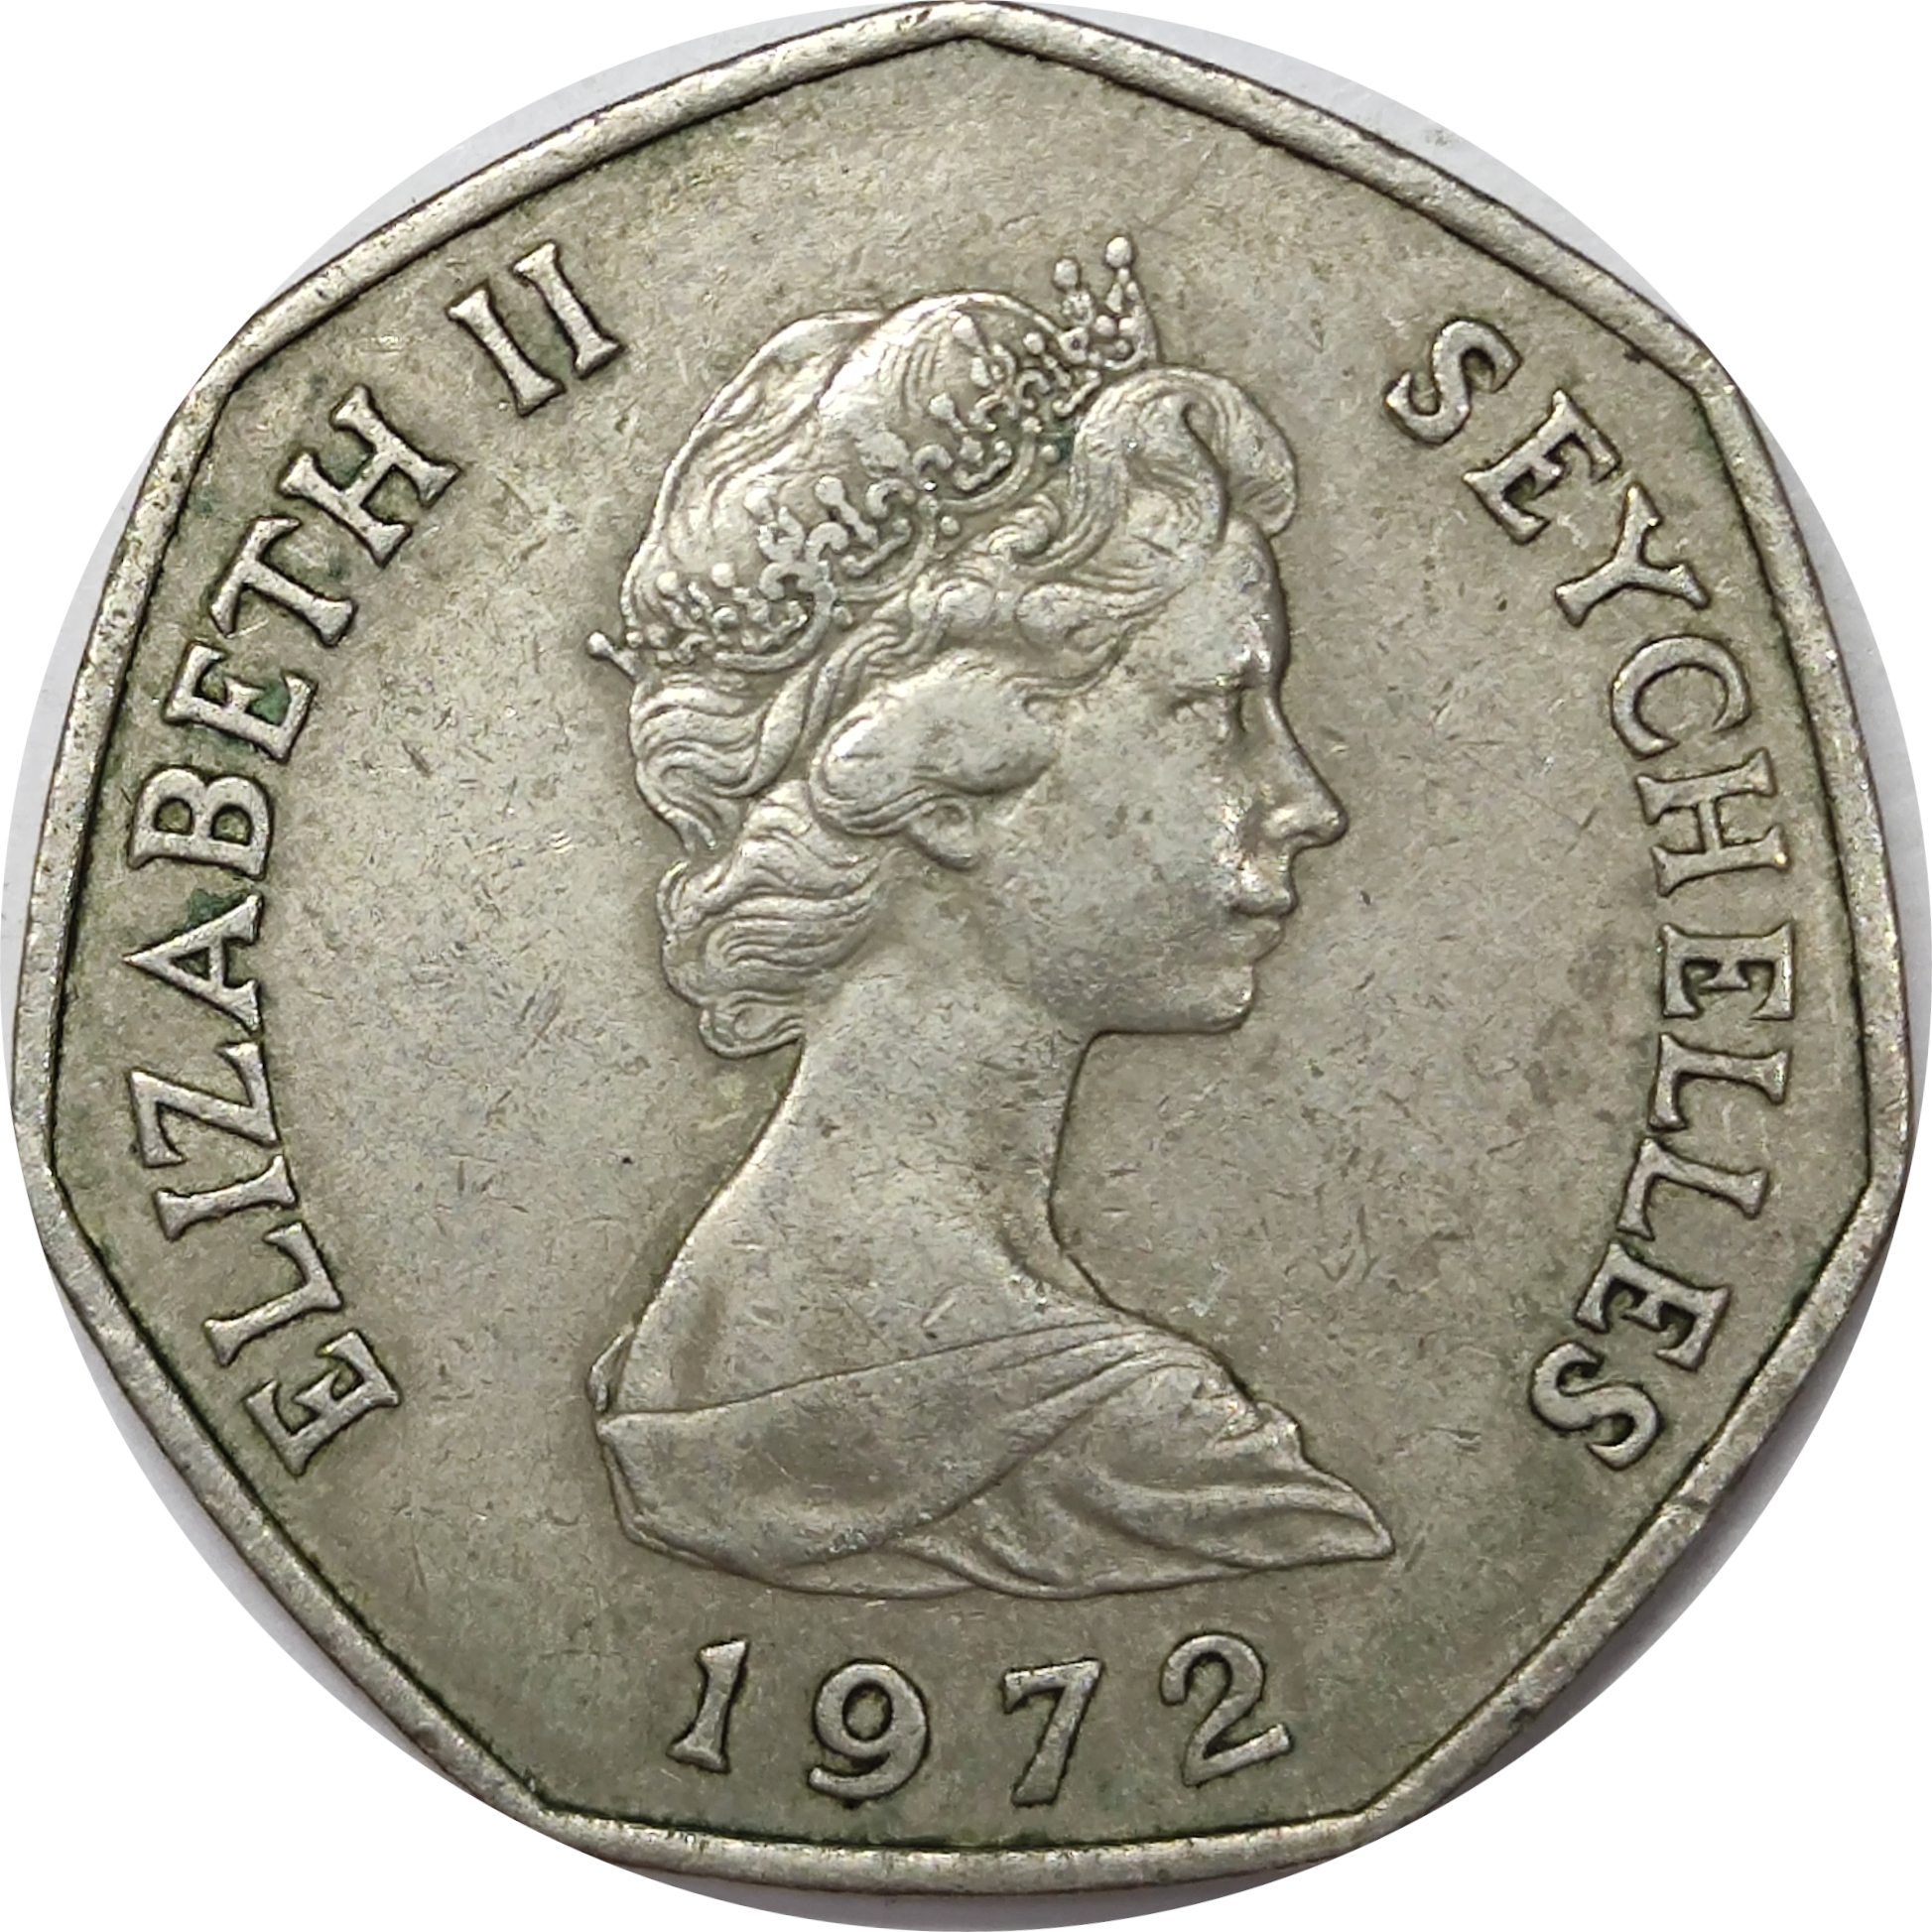 5 rupees - Elizabeth II - Tortue